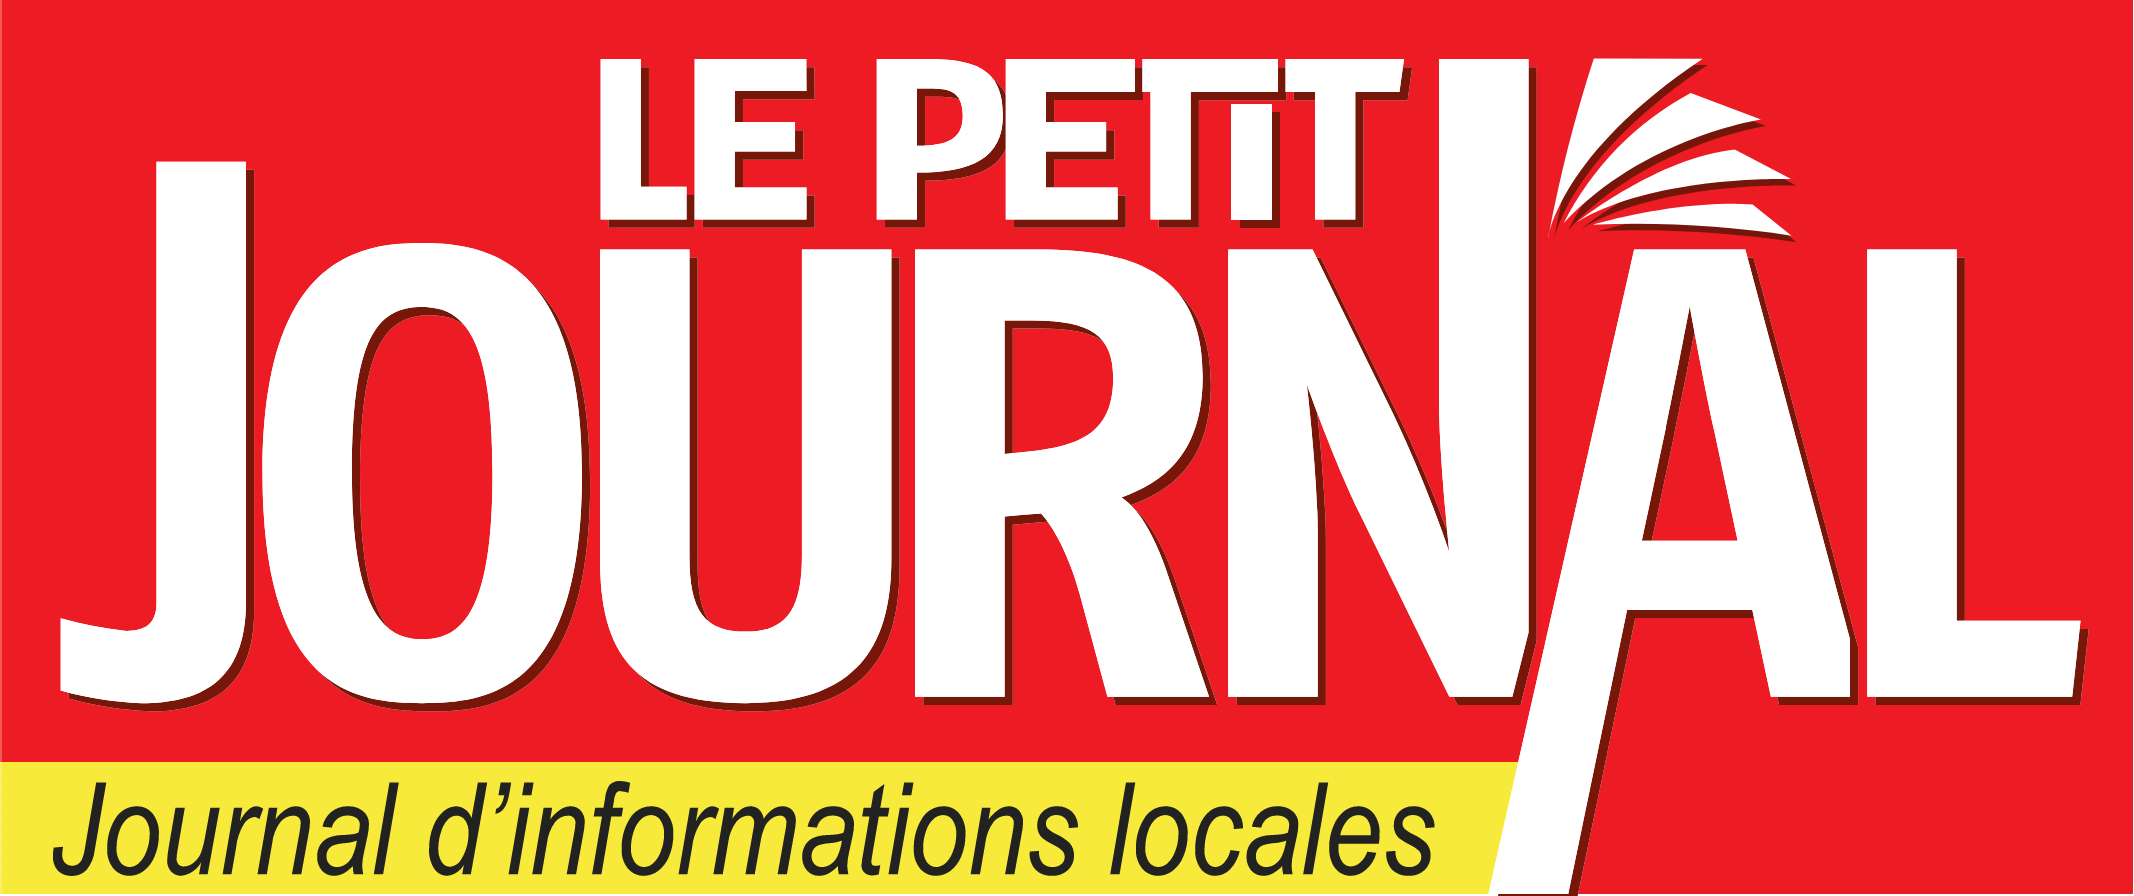 Le Petit Journal logo